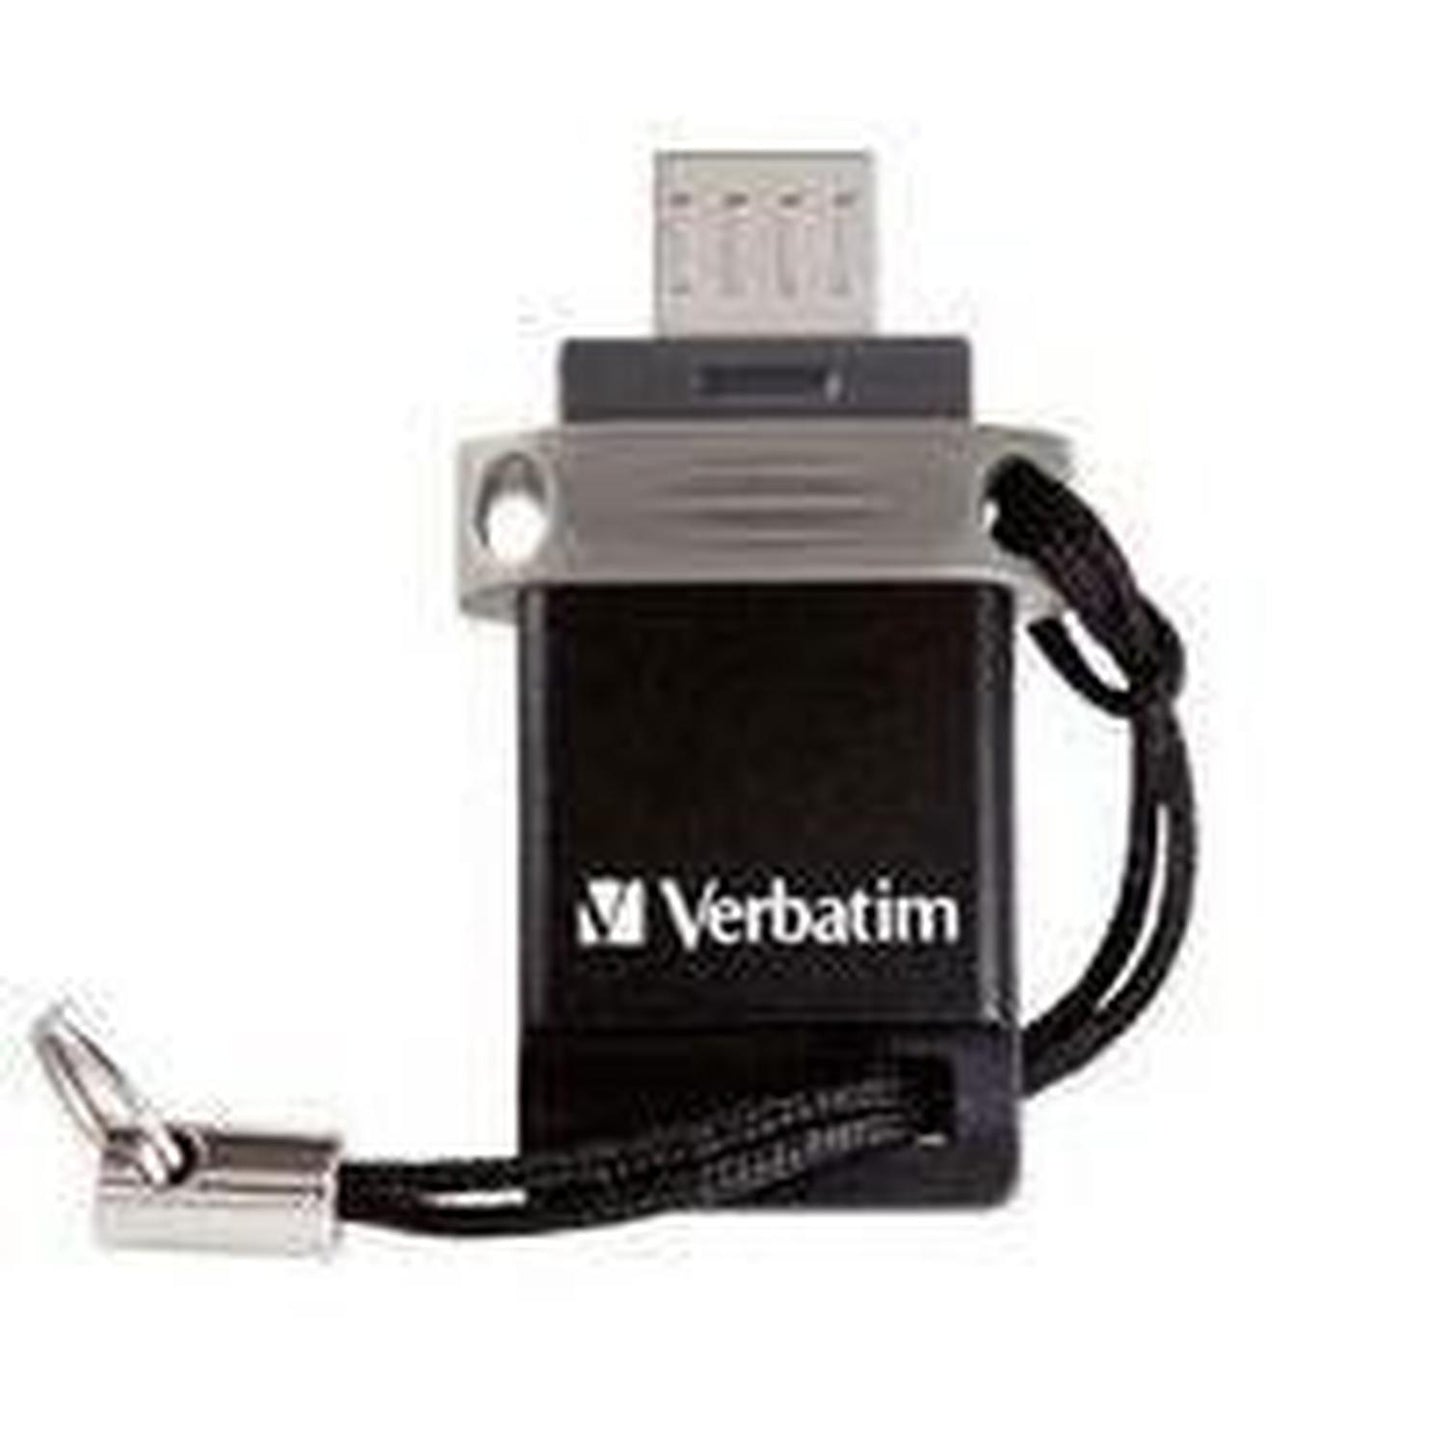 Memoria USB Verbatim Store 'n' Go, 16GB, USB 2.0, Negro, Plata